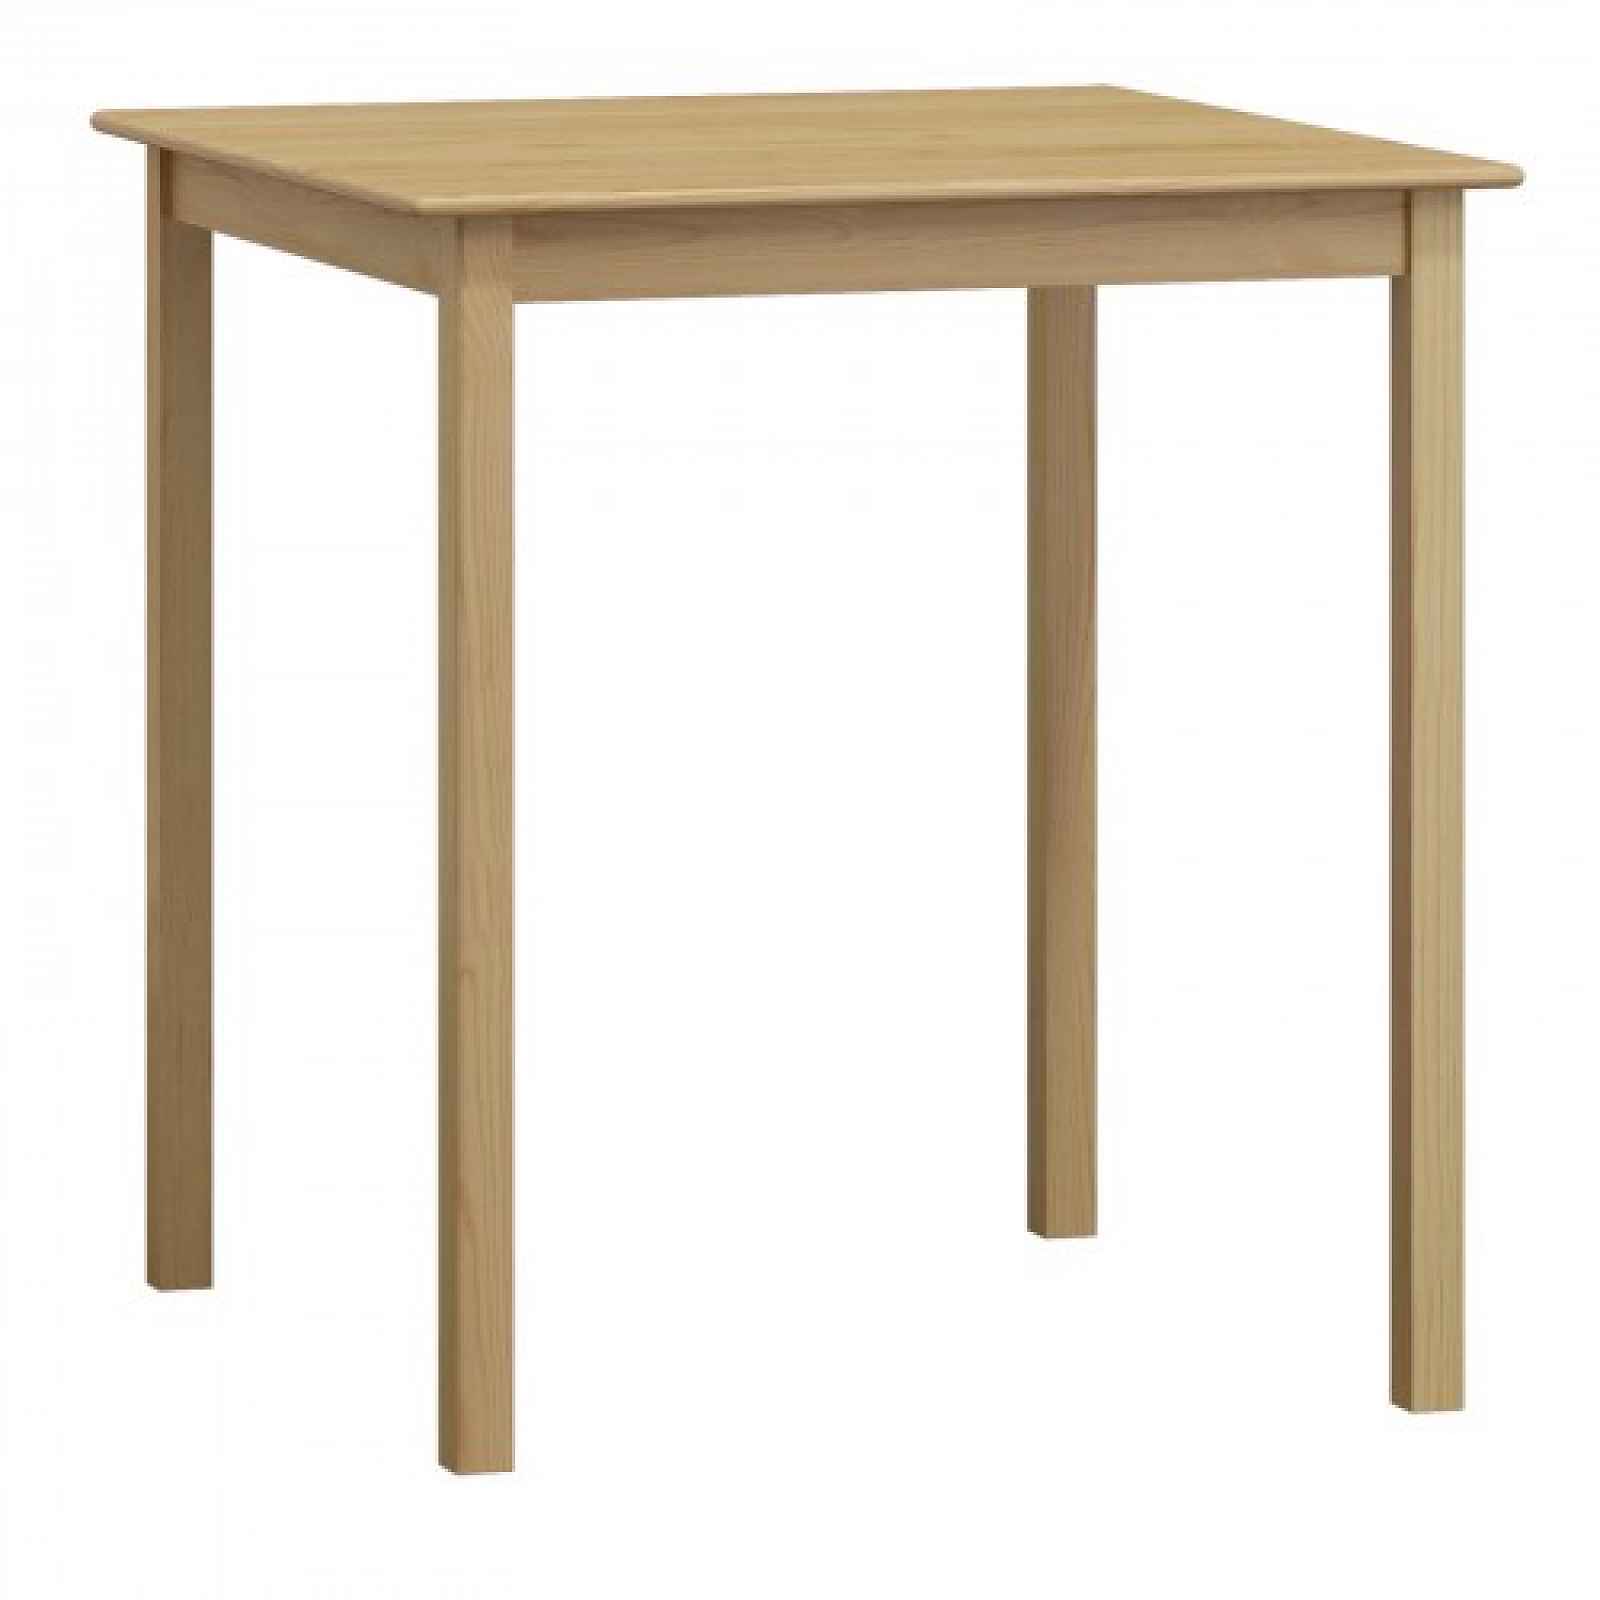 Stůl DASHEN 2, 80 x 80 cm, masiv borovice